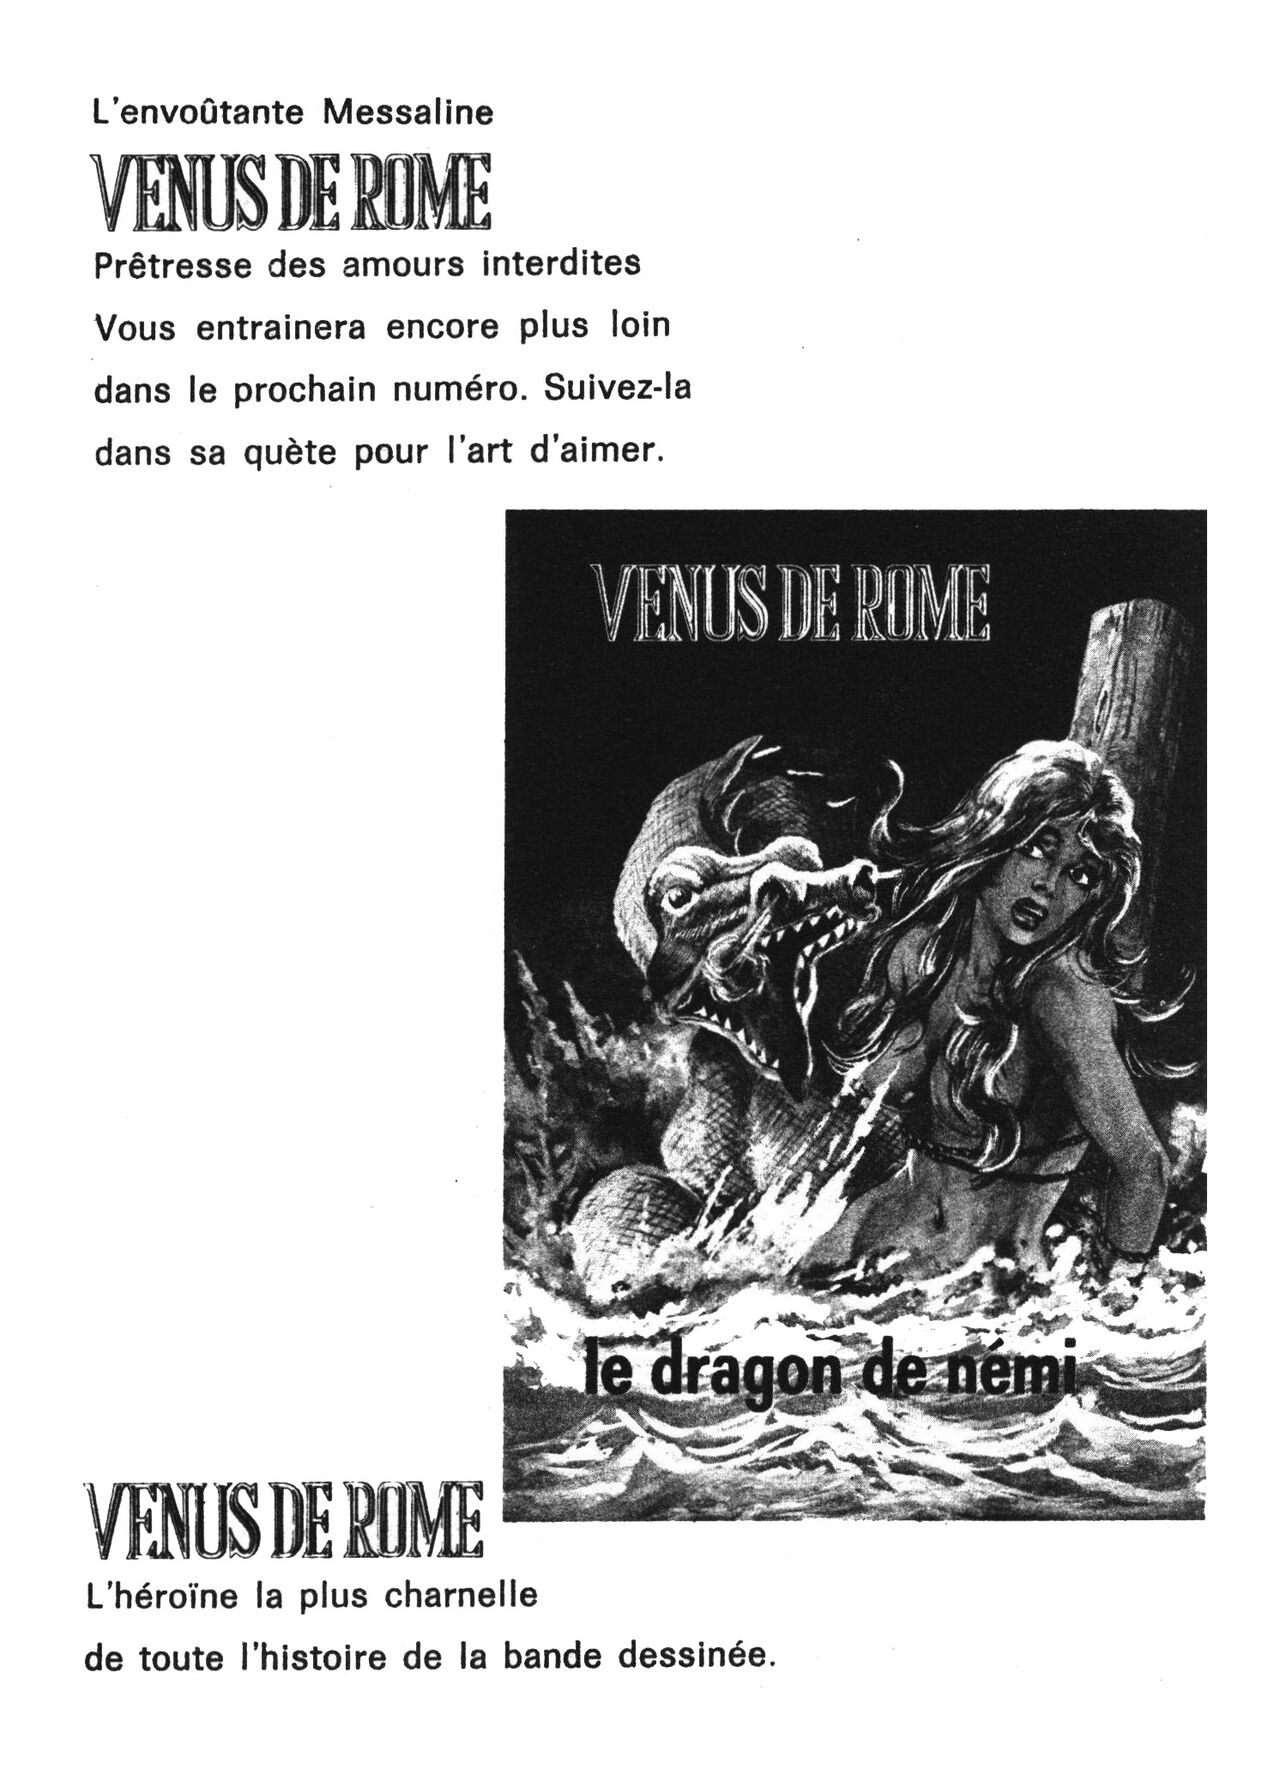 Venus de Rome 002 - La ceinture de chasteté [French] [PJP] 129